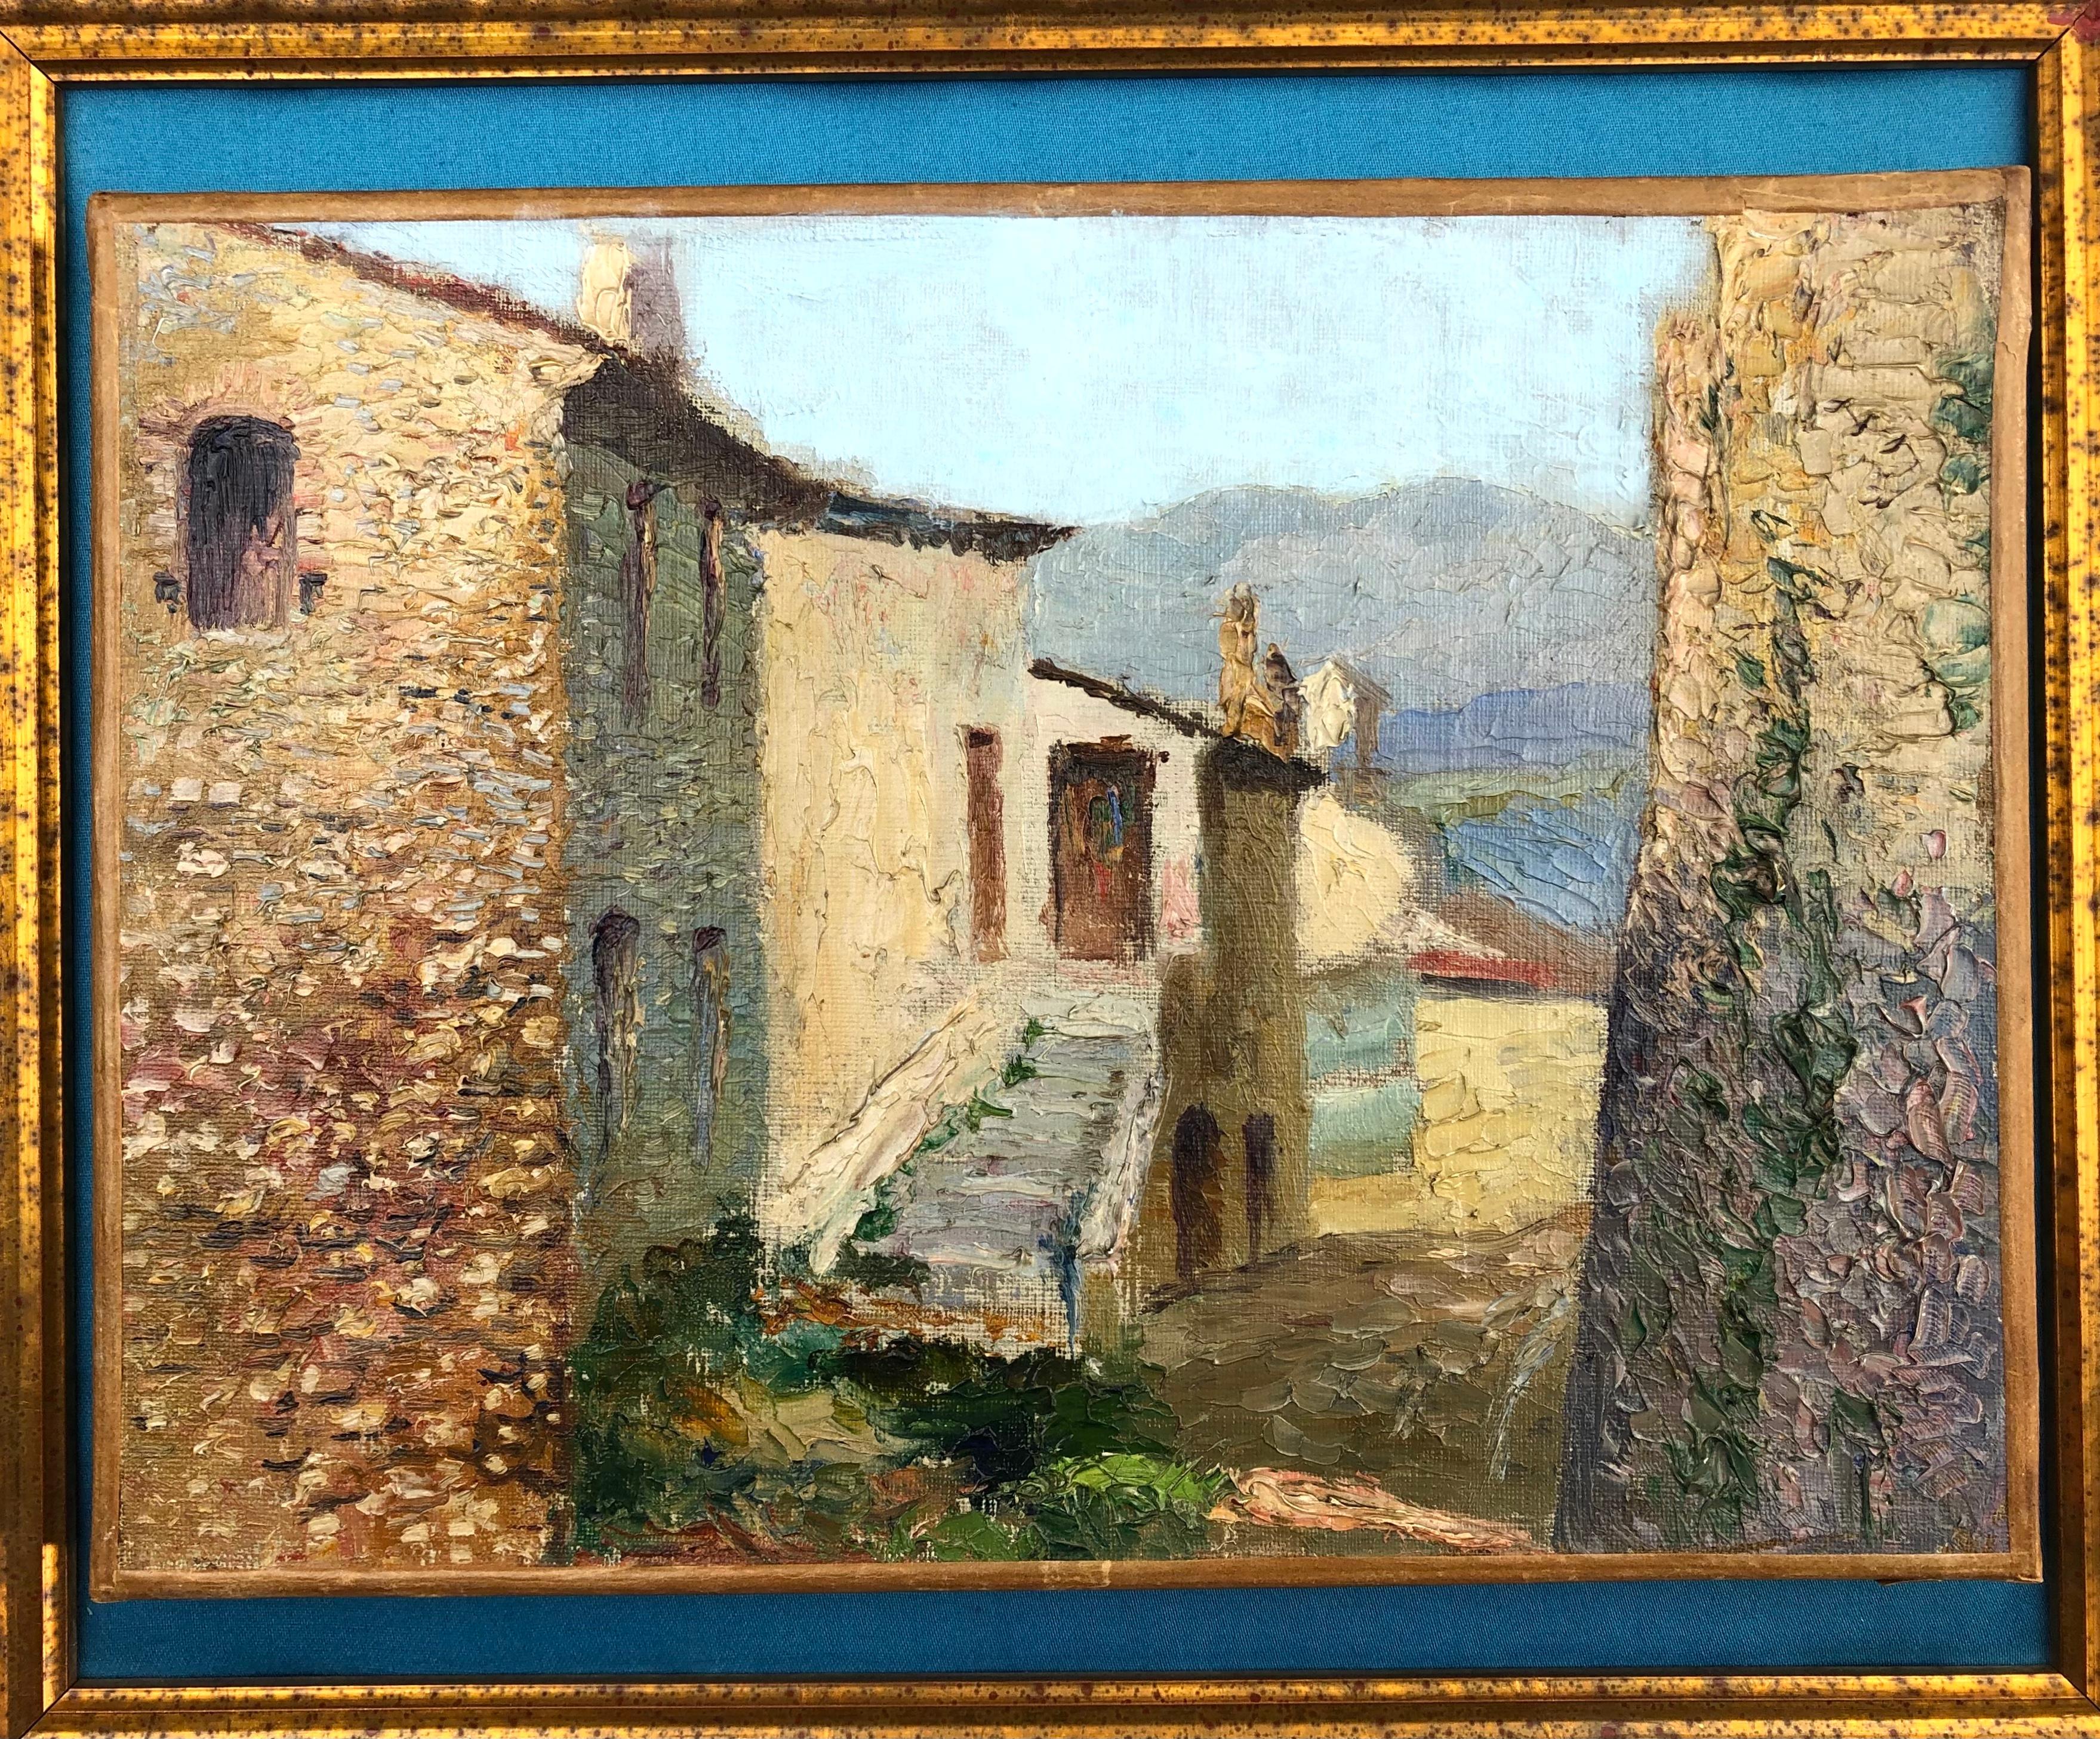 Künstler/Schule: Französisch, 20. Jahrhundert, signiert
Thema Côte d'Azur Dorf von Cagnes.

Professionell gerahmt.

